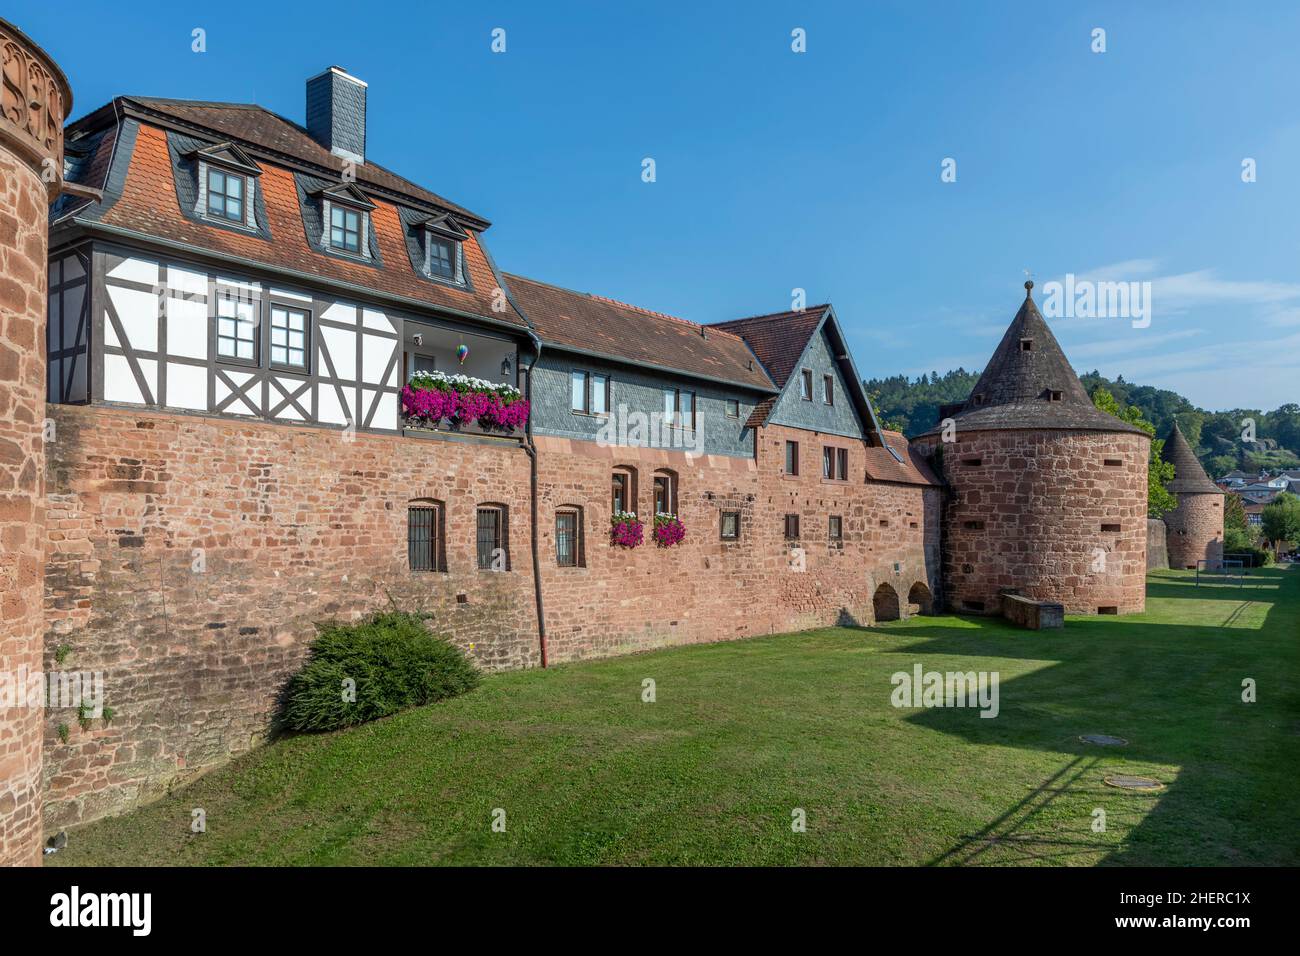 Vue panoramique sur le mur historique de la ville avec des maisons à colombages à Budingen, en Allemagne Banque D'Images